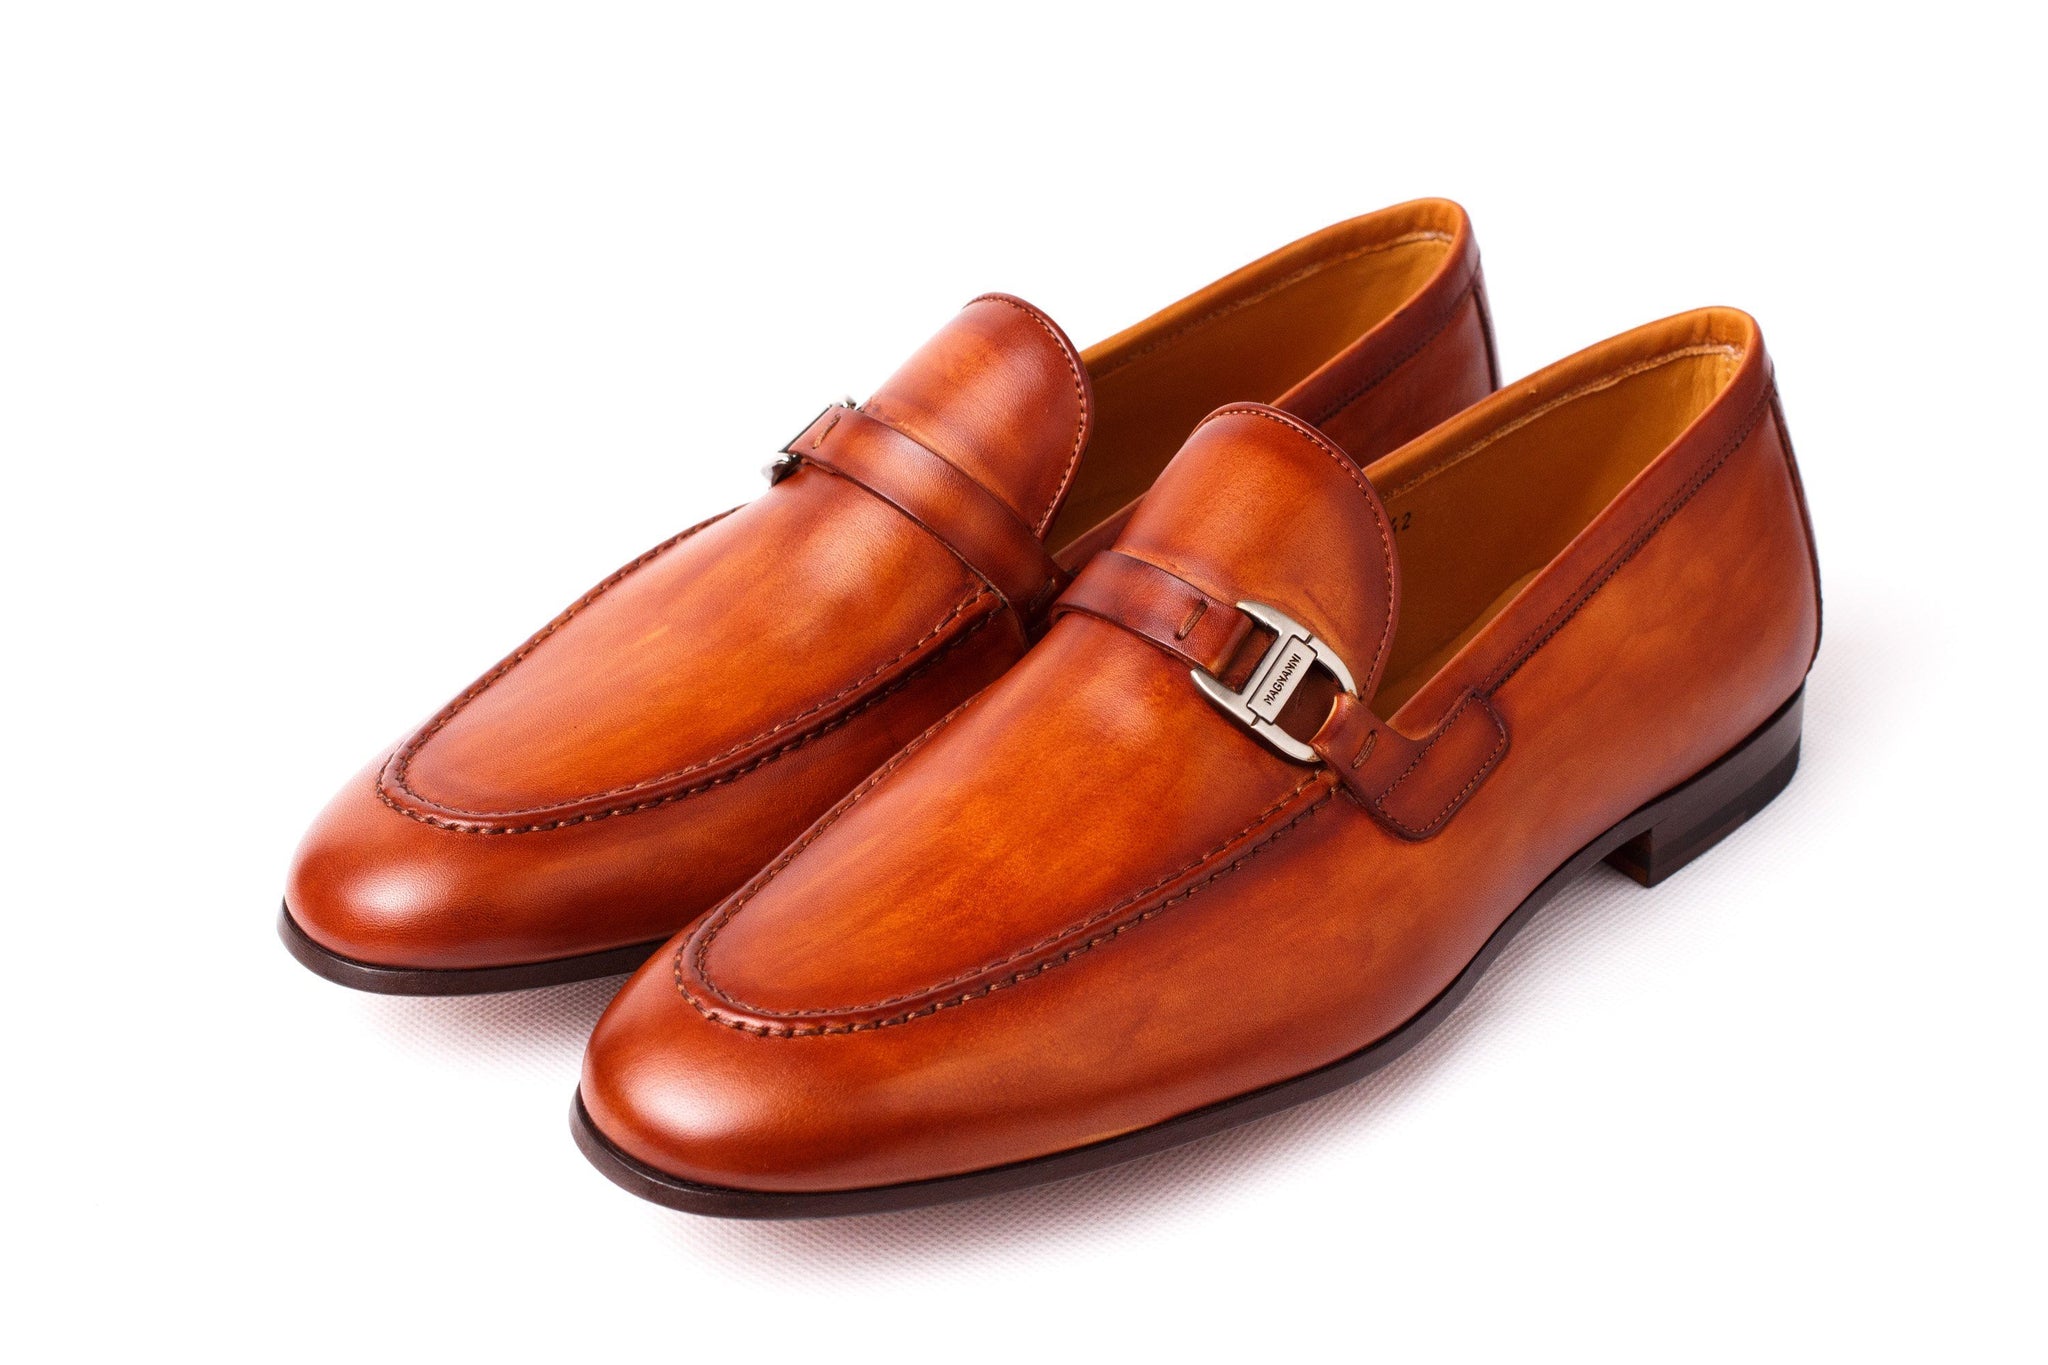 magnanni shoes sale uk